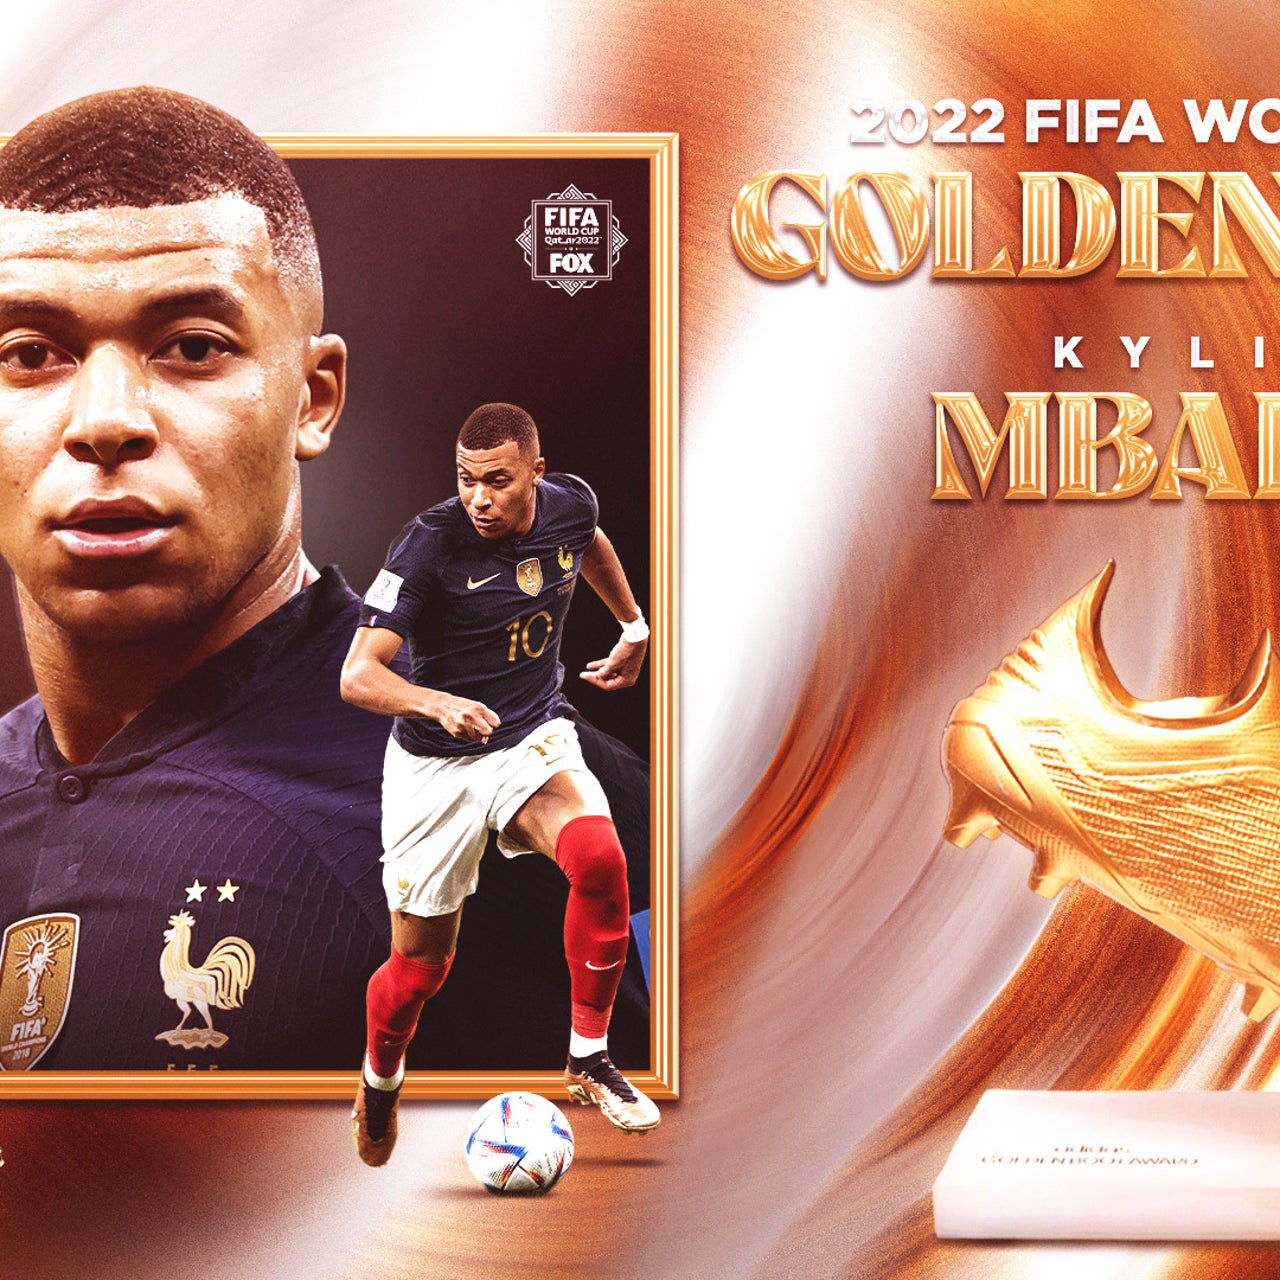 Com 3 gols na final, Mbappé ganha a Chuteira de Ouro no Qatar